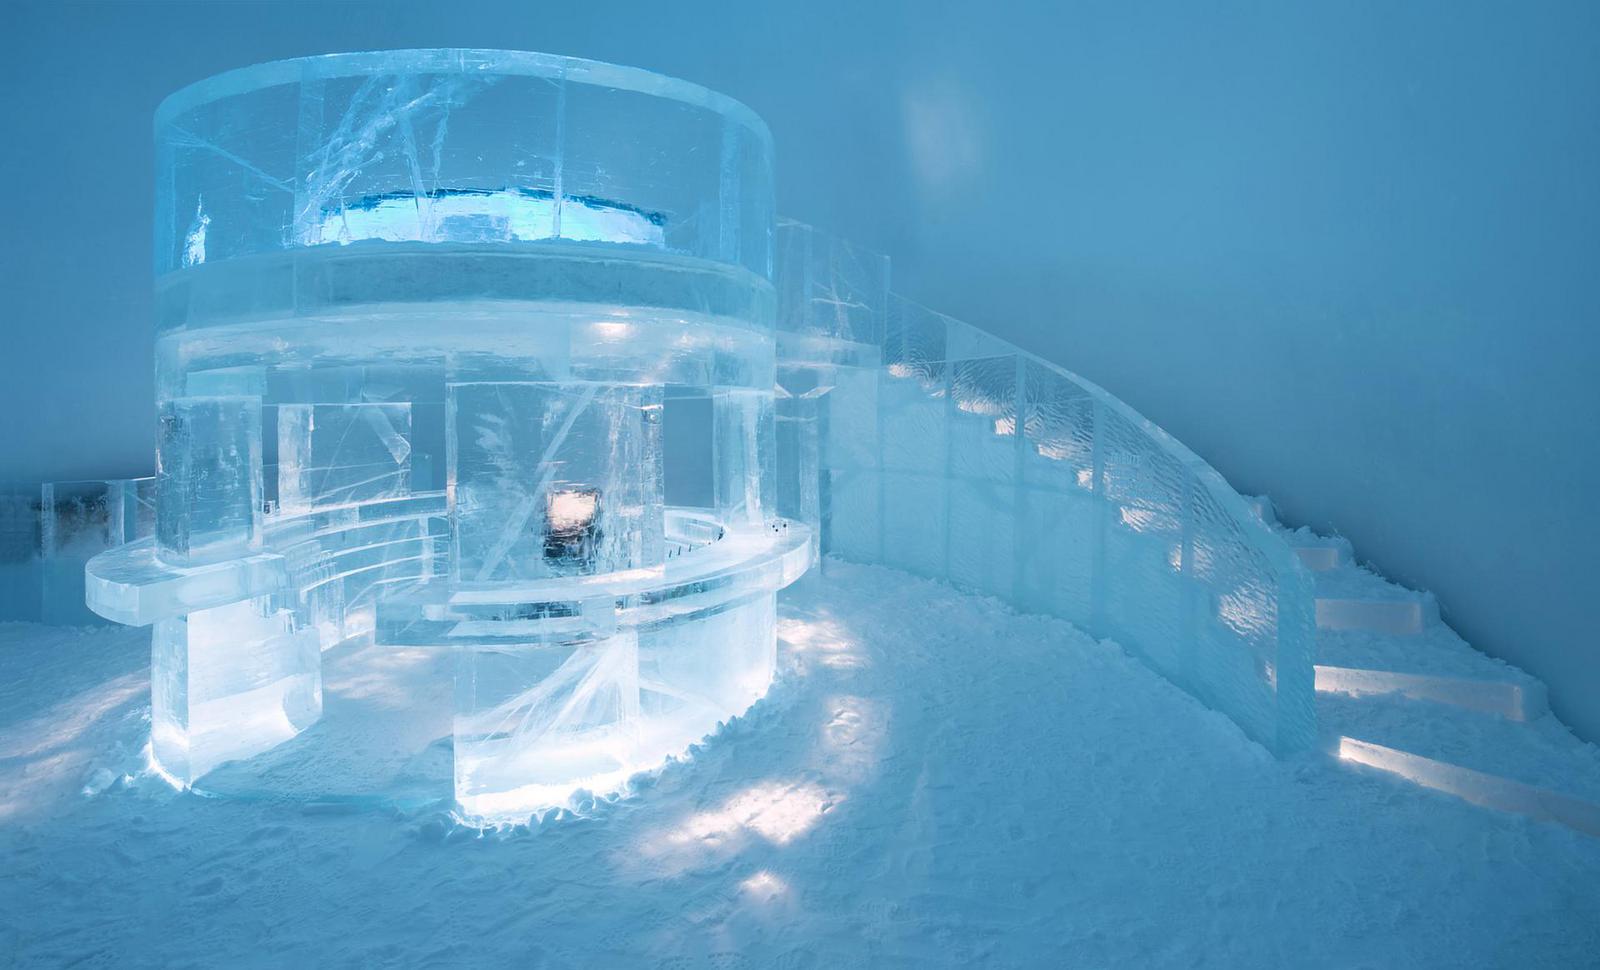 The IceBar Jukkasjärvi design is called "Tribute".